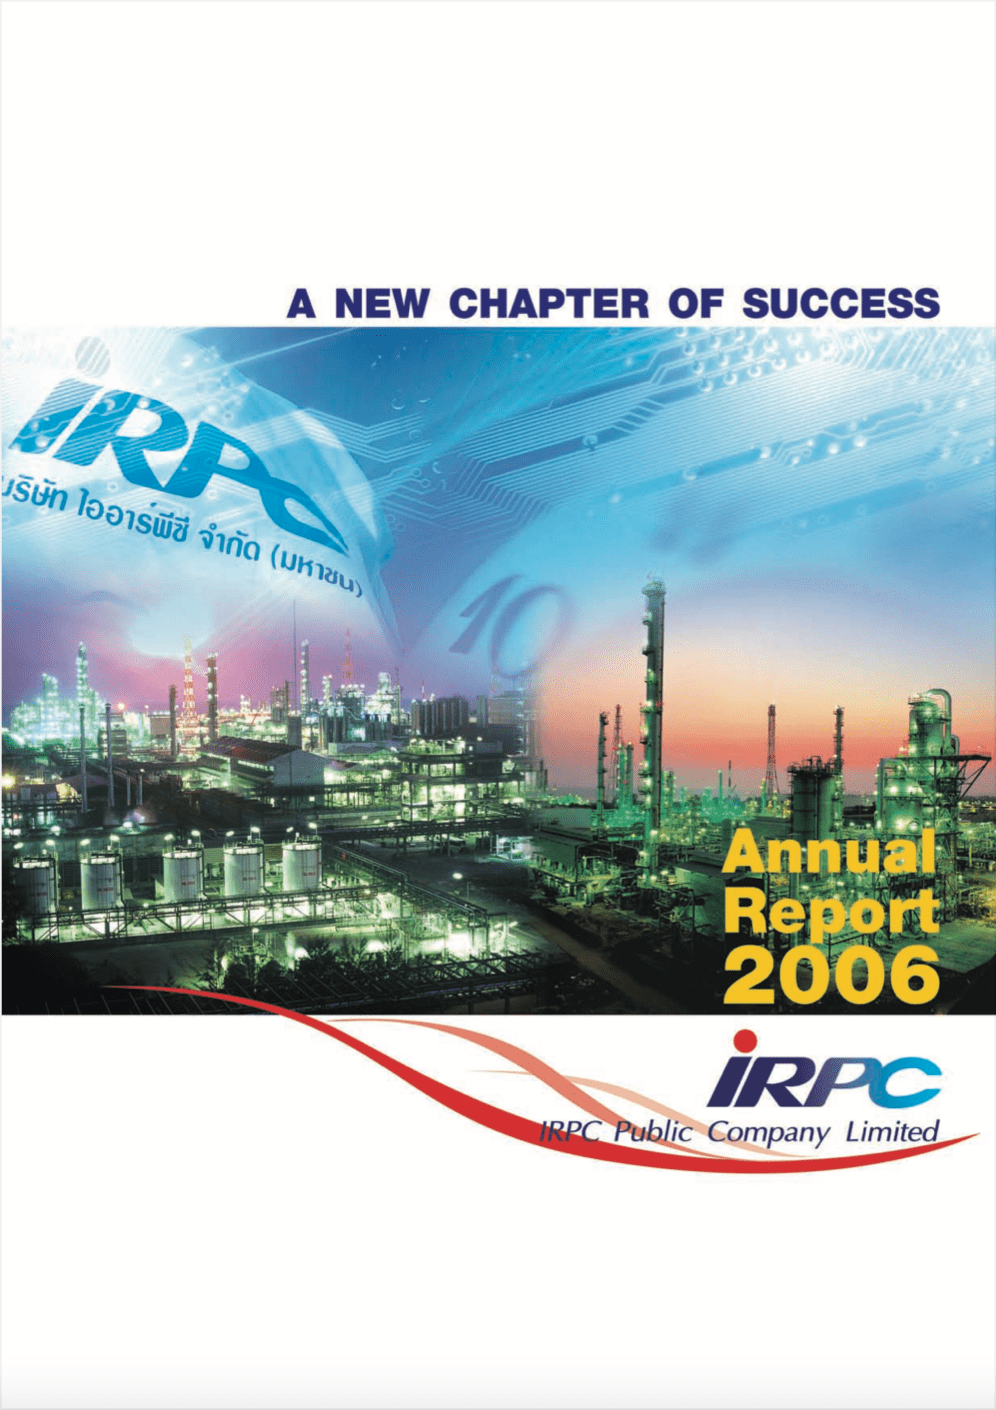 IRPC - รายงานประจำปี